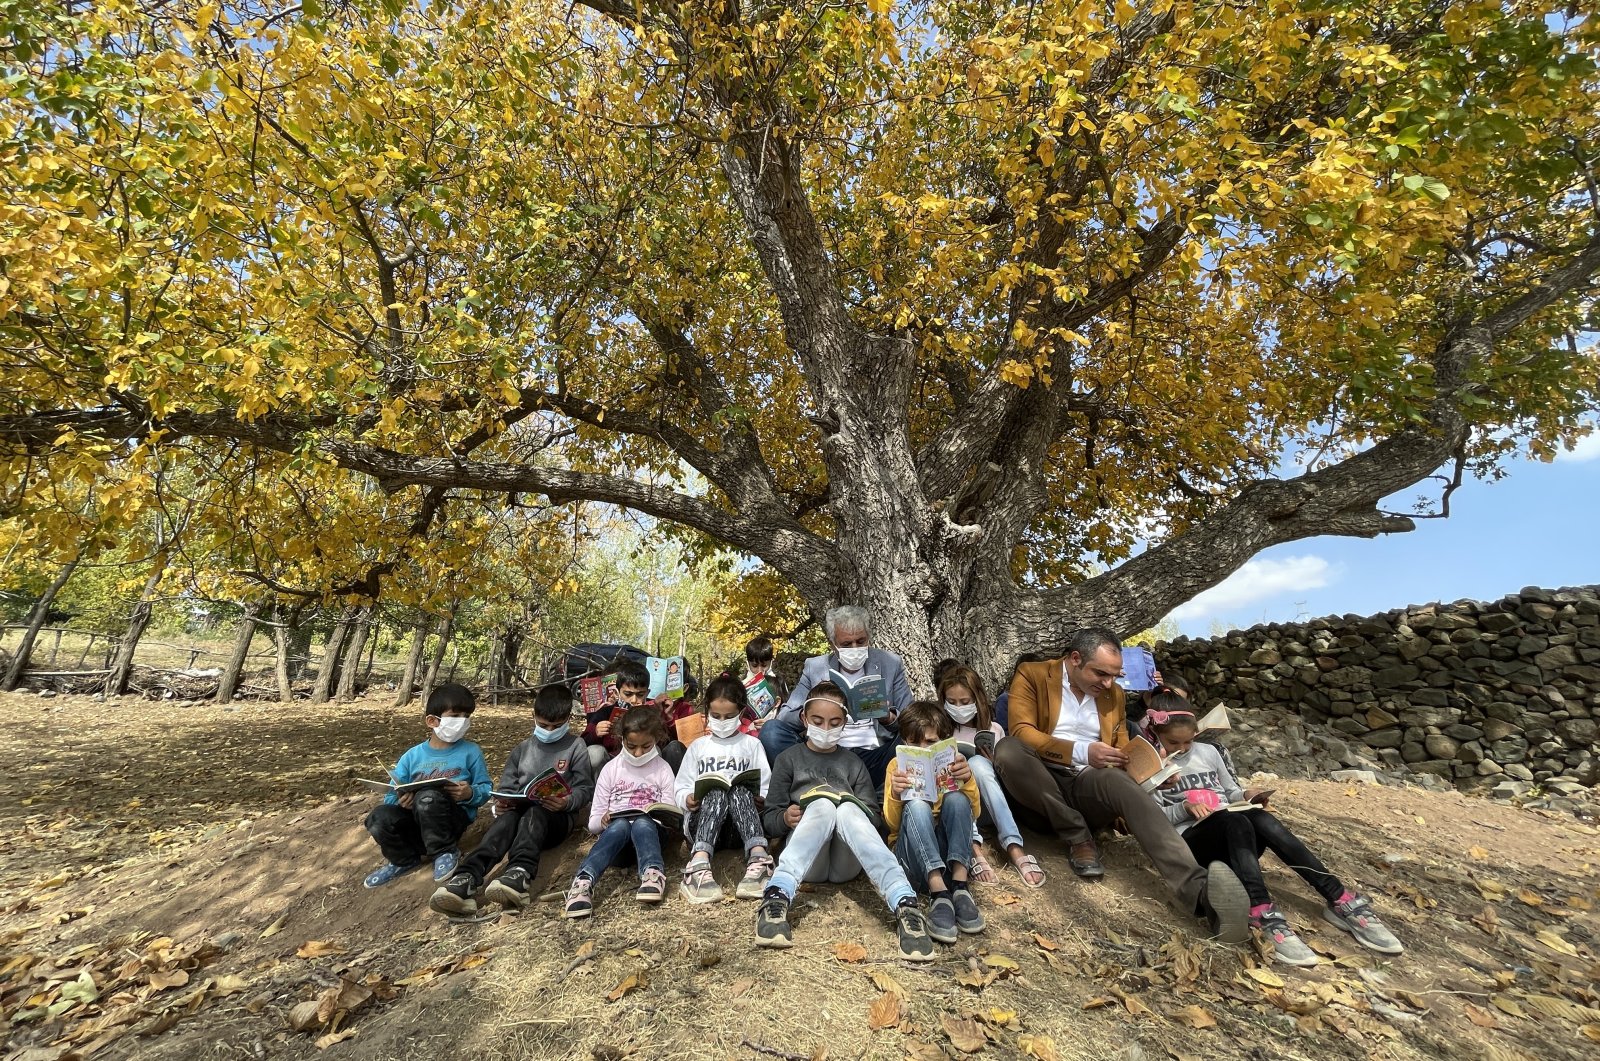 Cuma Karaaslan (C) reads books with children under a tree in the village of Çavuşlar, in Bingöl, eastern Turkey, Oct. 26, 2021. (AA PHOTO)